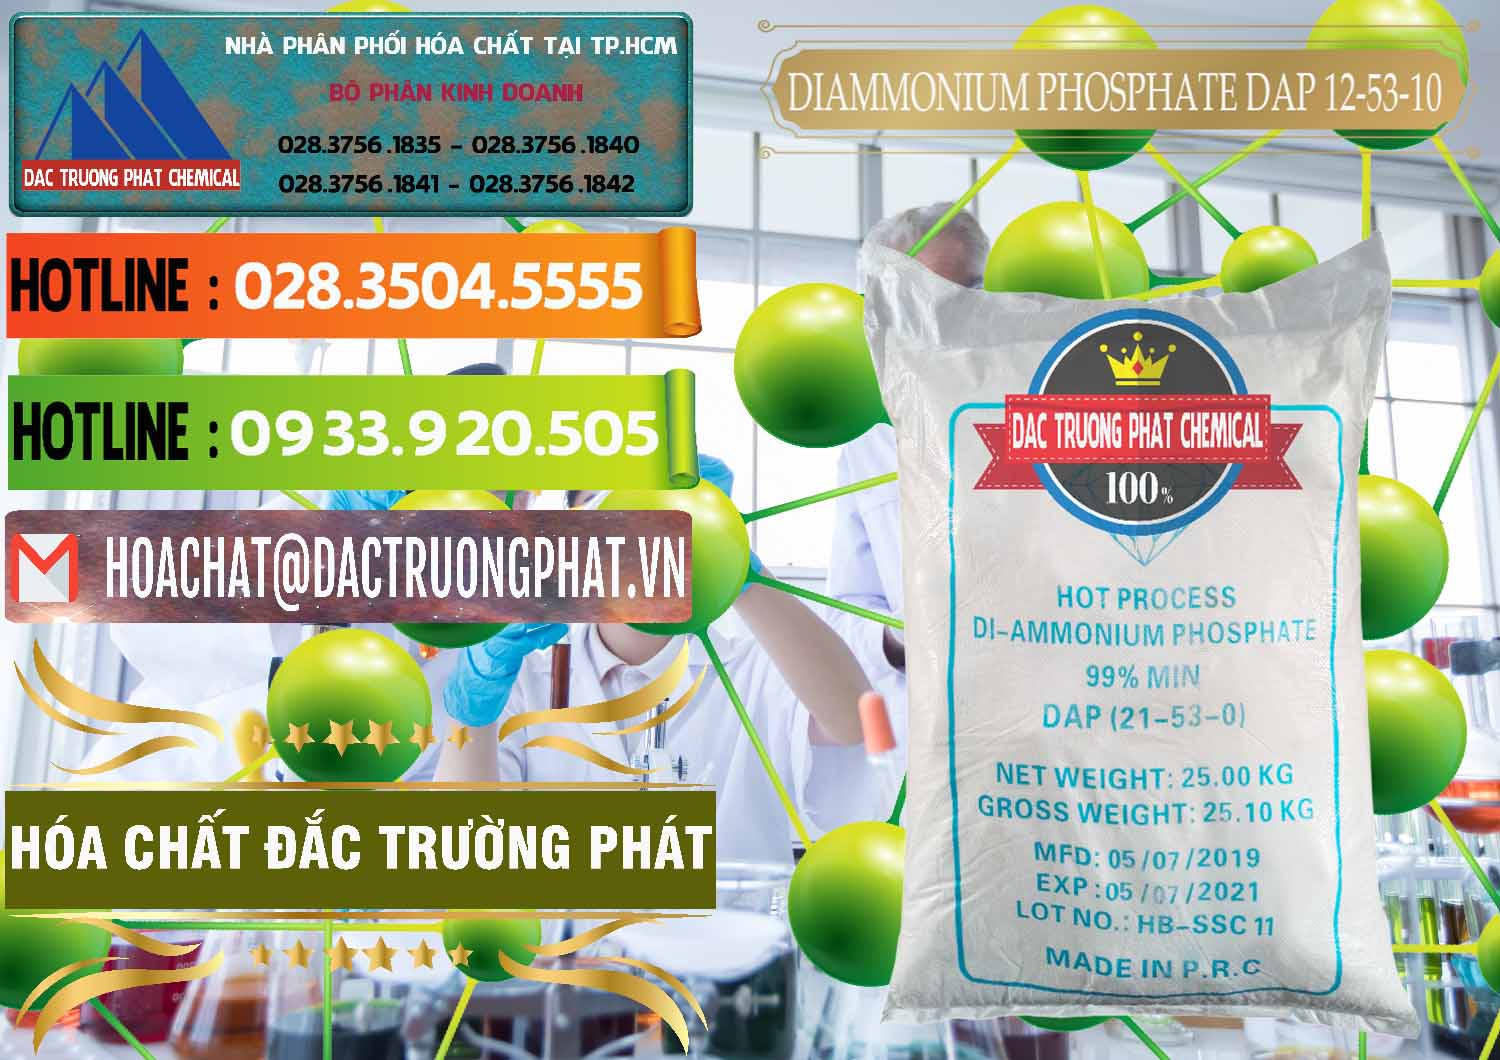 Công ty chuyên bán và cung ứng DAP - Diammonium Phosphate Trung Quốc China - 0319 - Chuyên kinh doanh - phân phối hóa chất tại TP.HCM - cungcaphoachat.com.vn